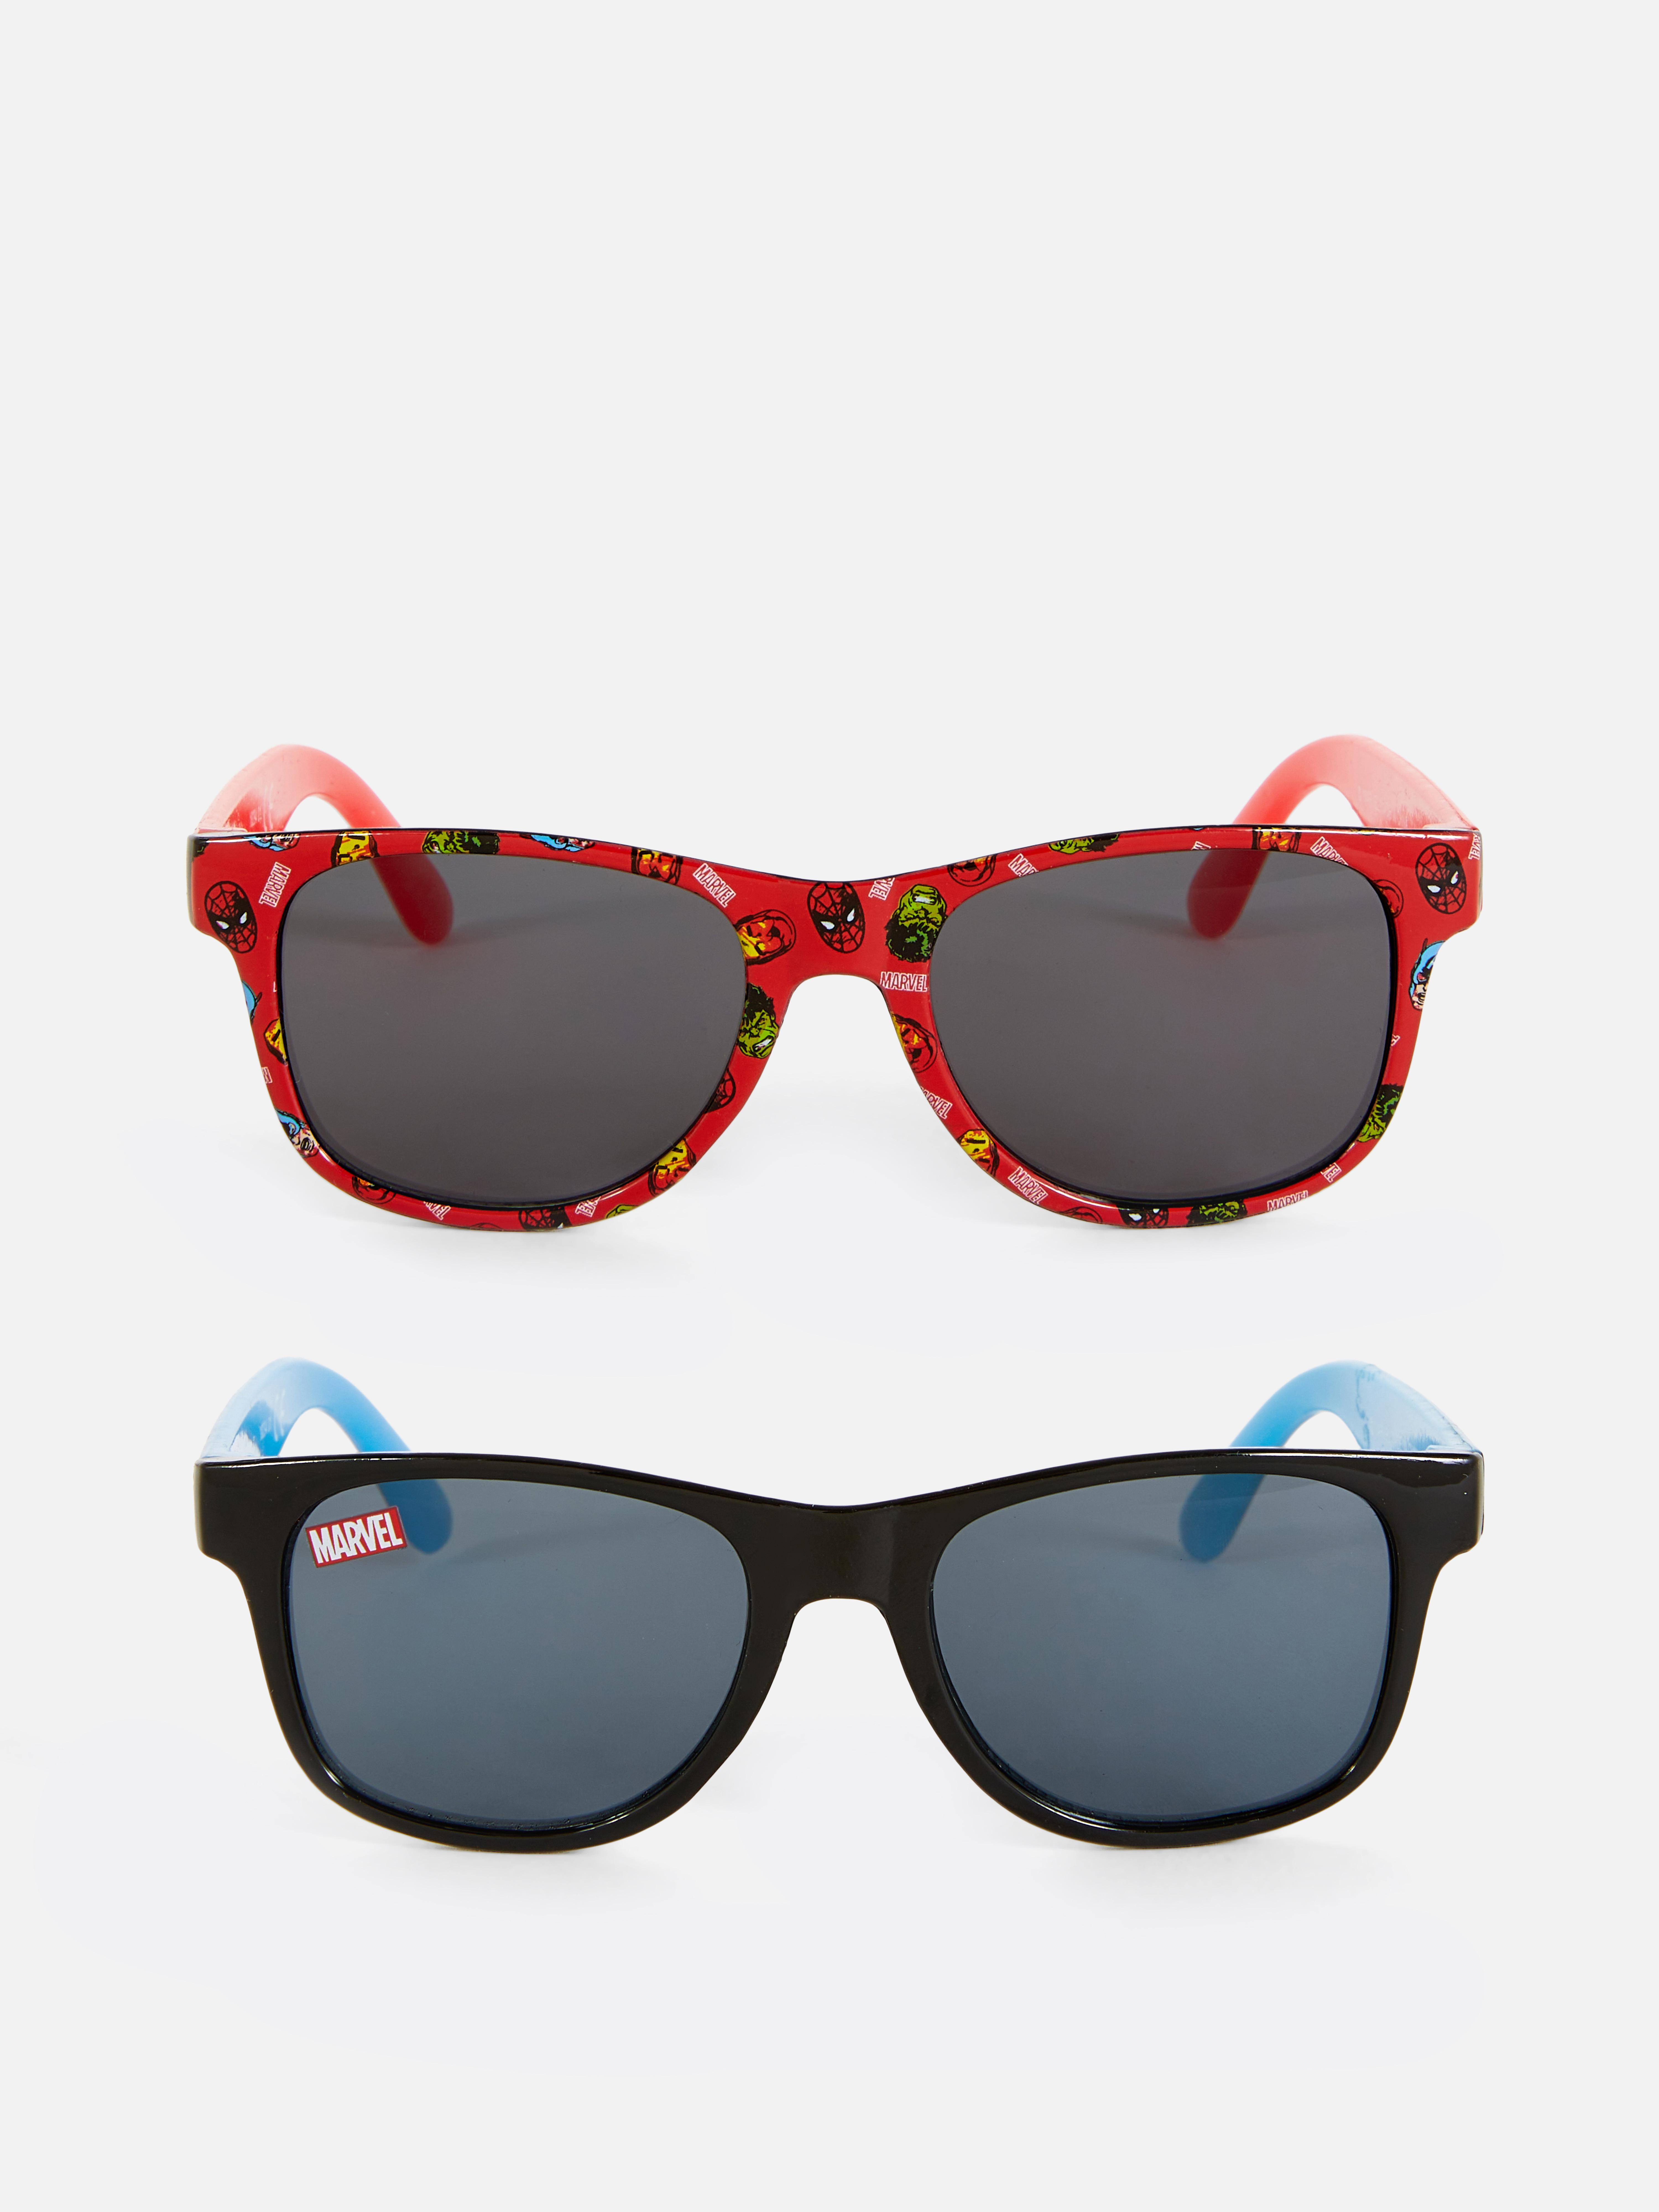 2pk Marvel Avengers Sunglasses